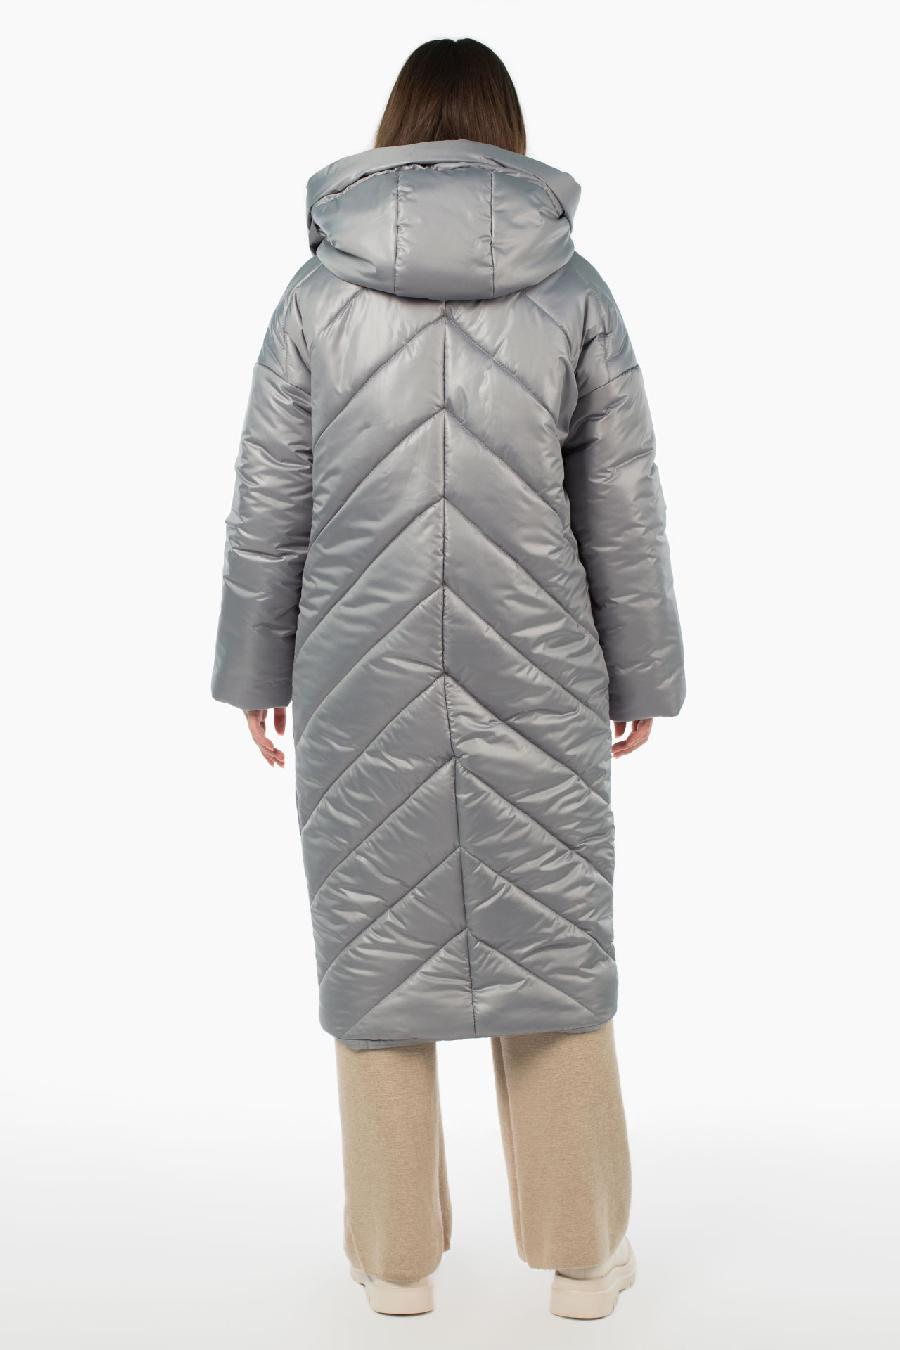 05-2060 Куртка женская зимняя (синтепон 300) Плащевка серый